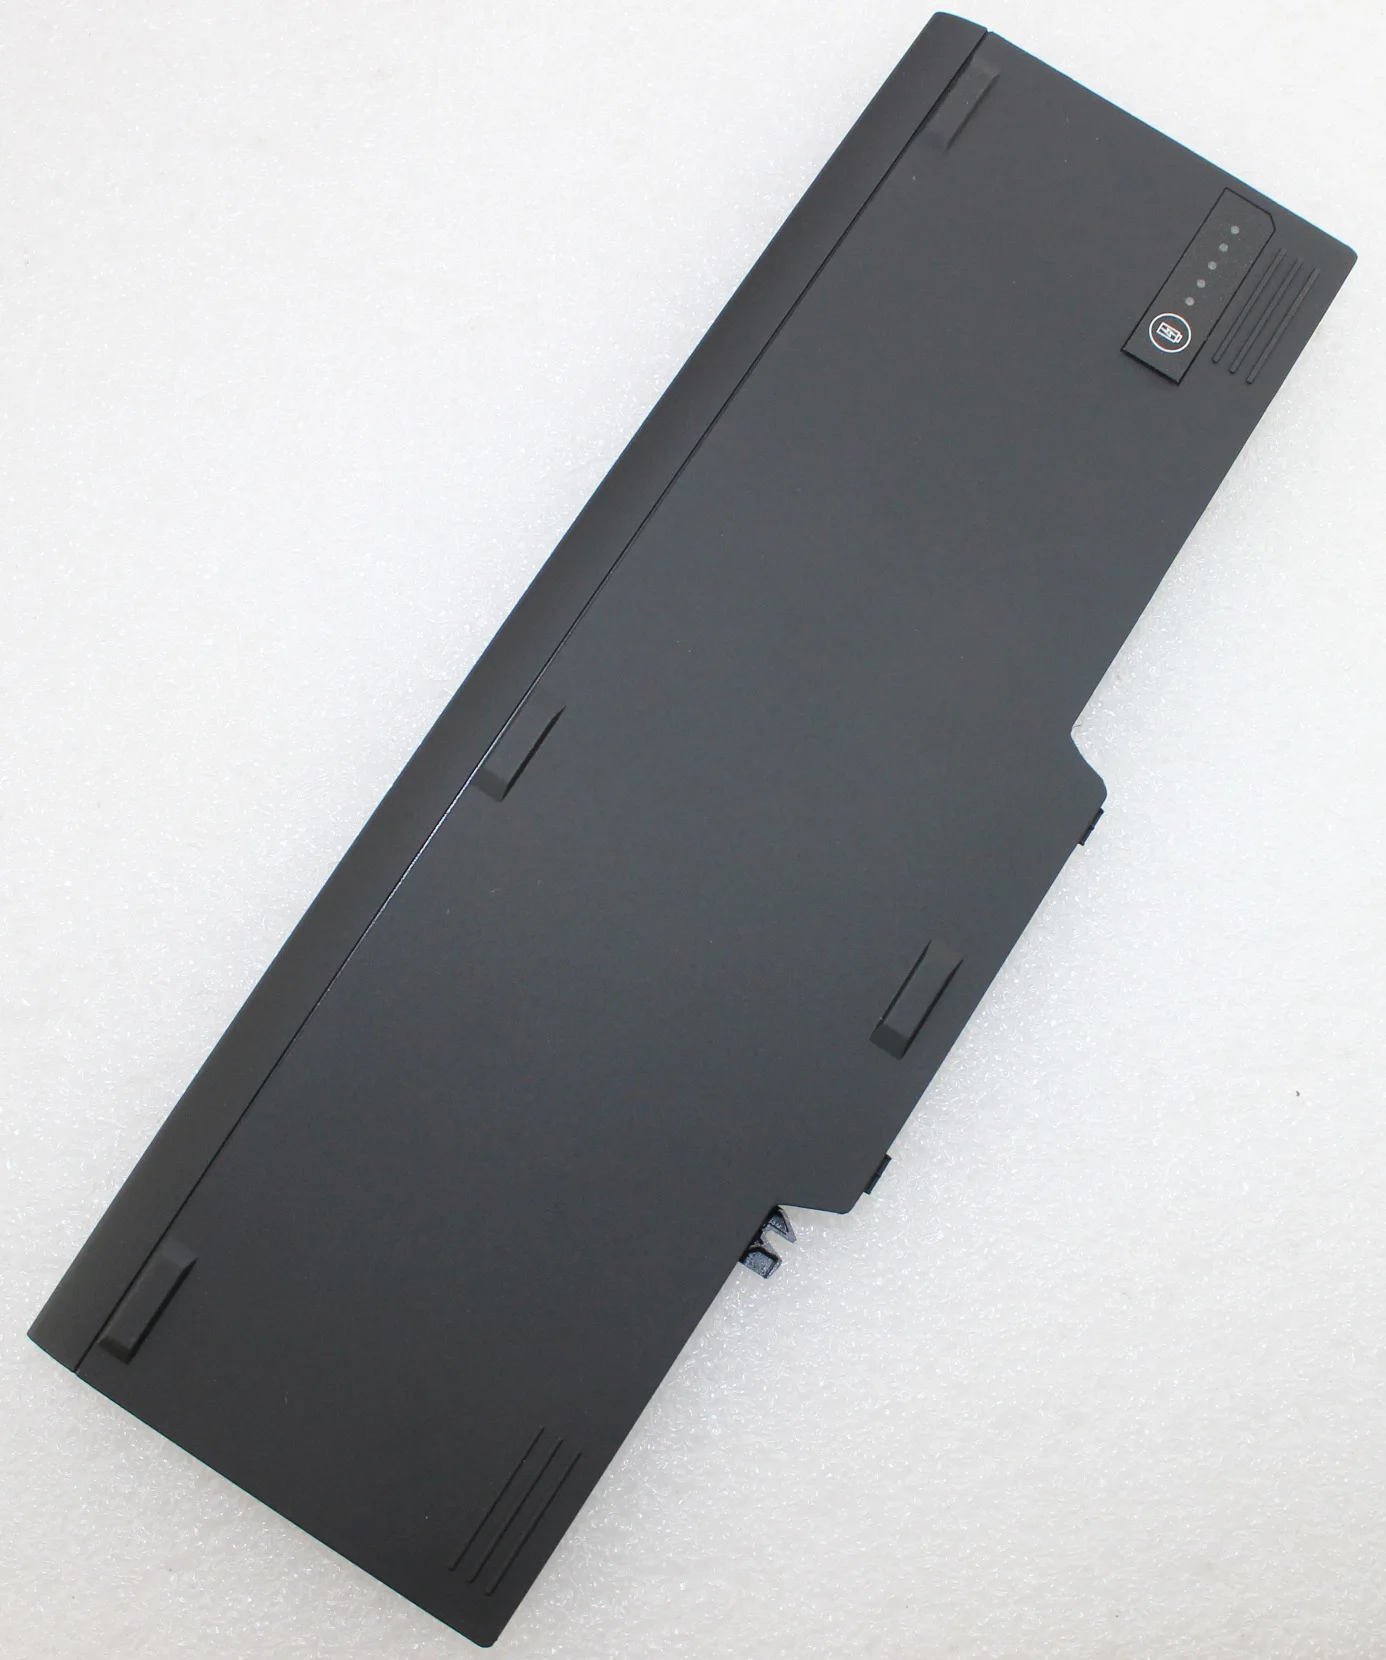 Аккумулятор для ноутбука HUAHERO планшетного ПК DELL XT X XFR серии PU536 MR369 312 0650 451 10499 0855 11509